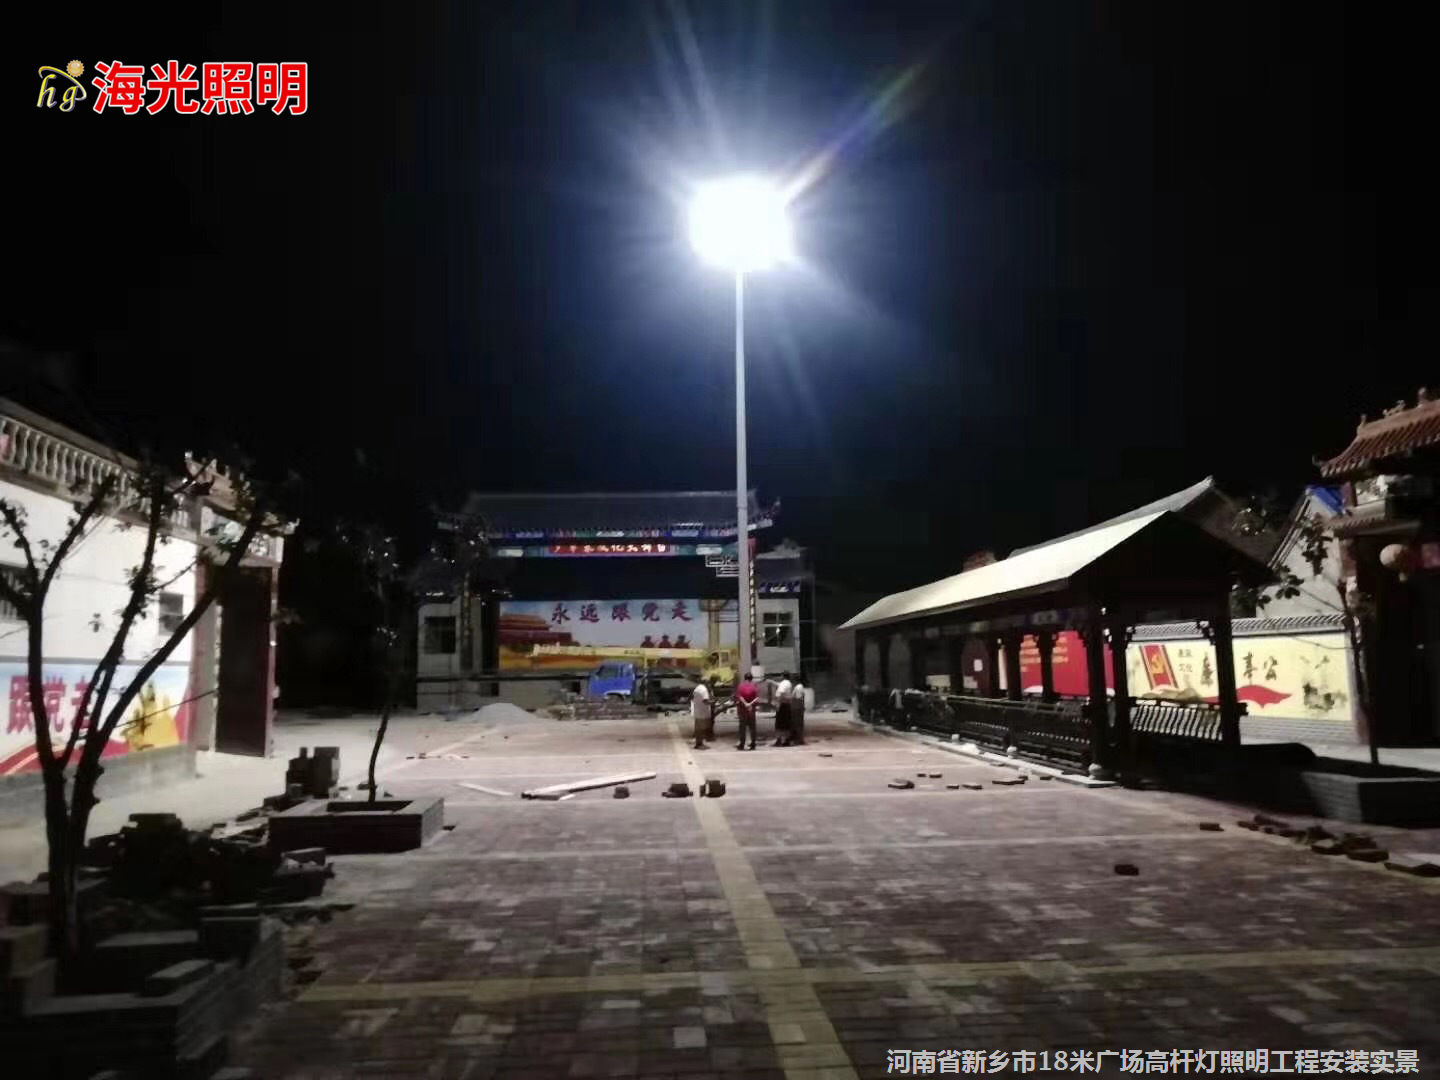 河南省新乡市18米广场高杆灯照明工程